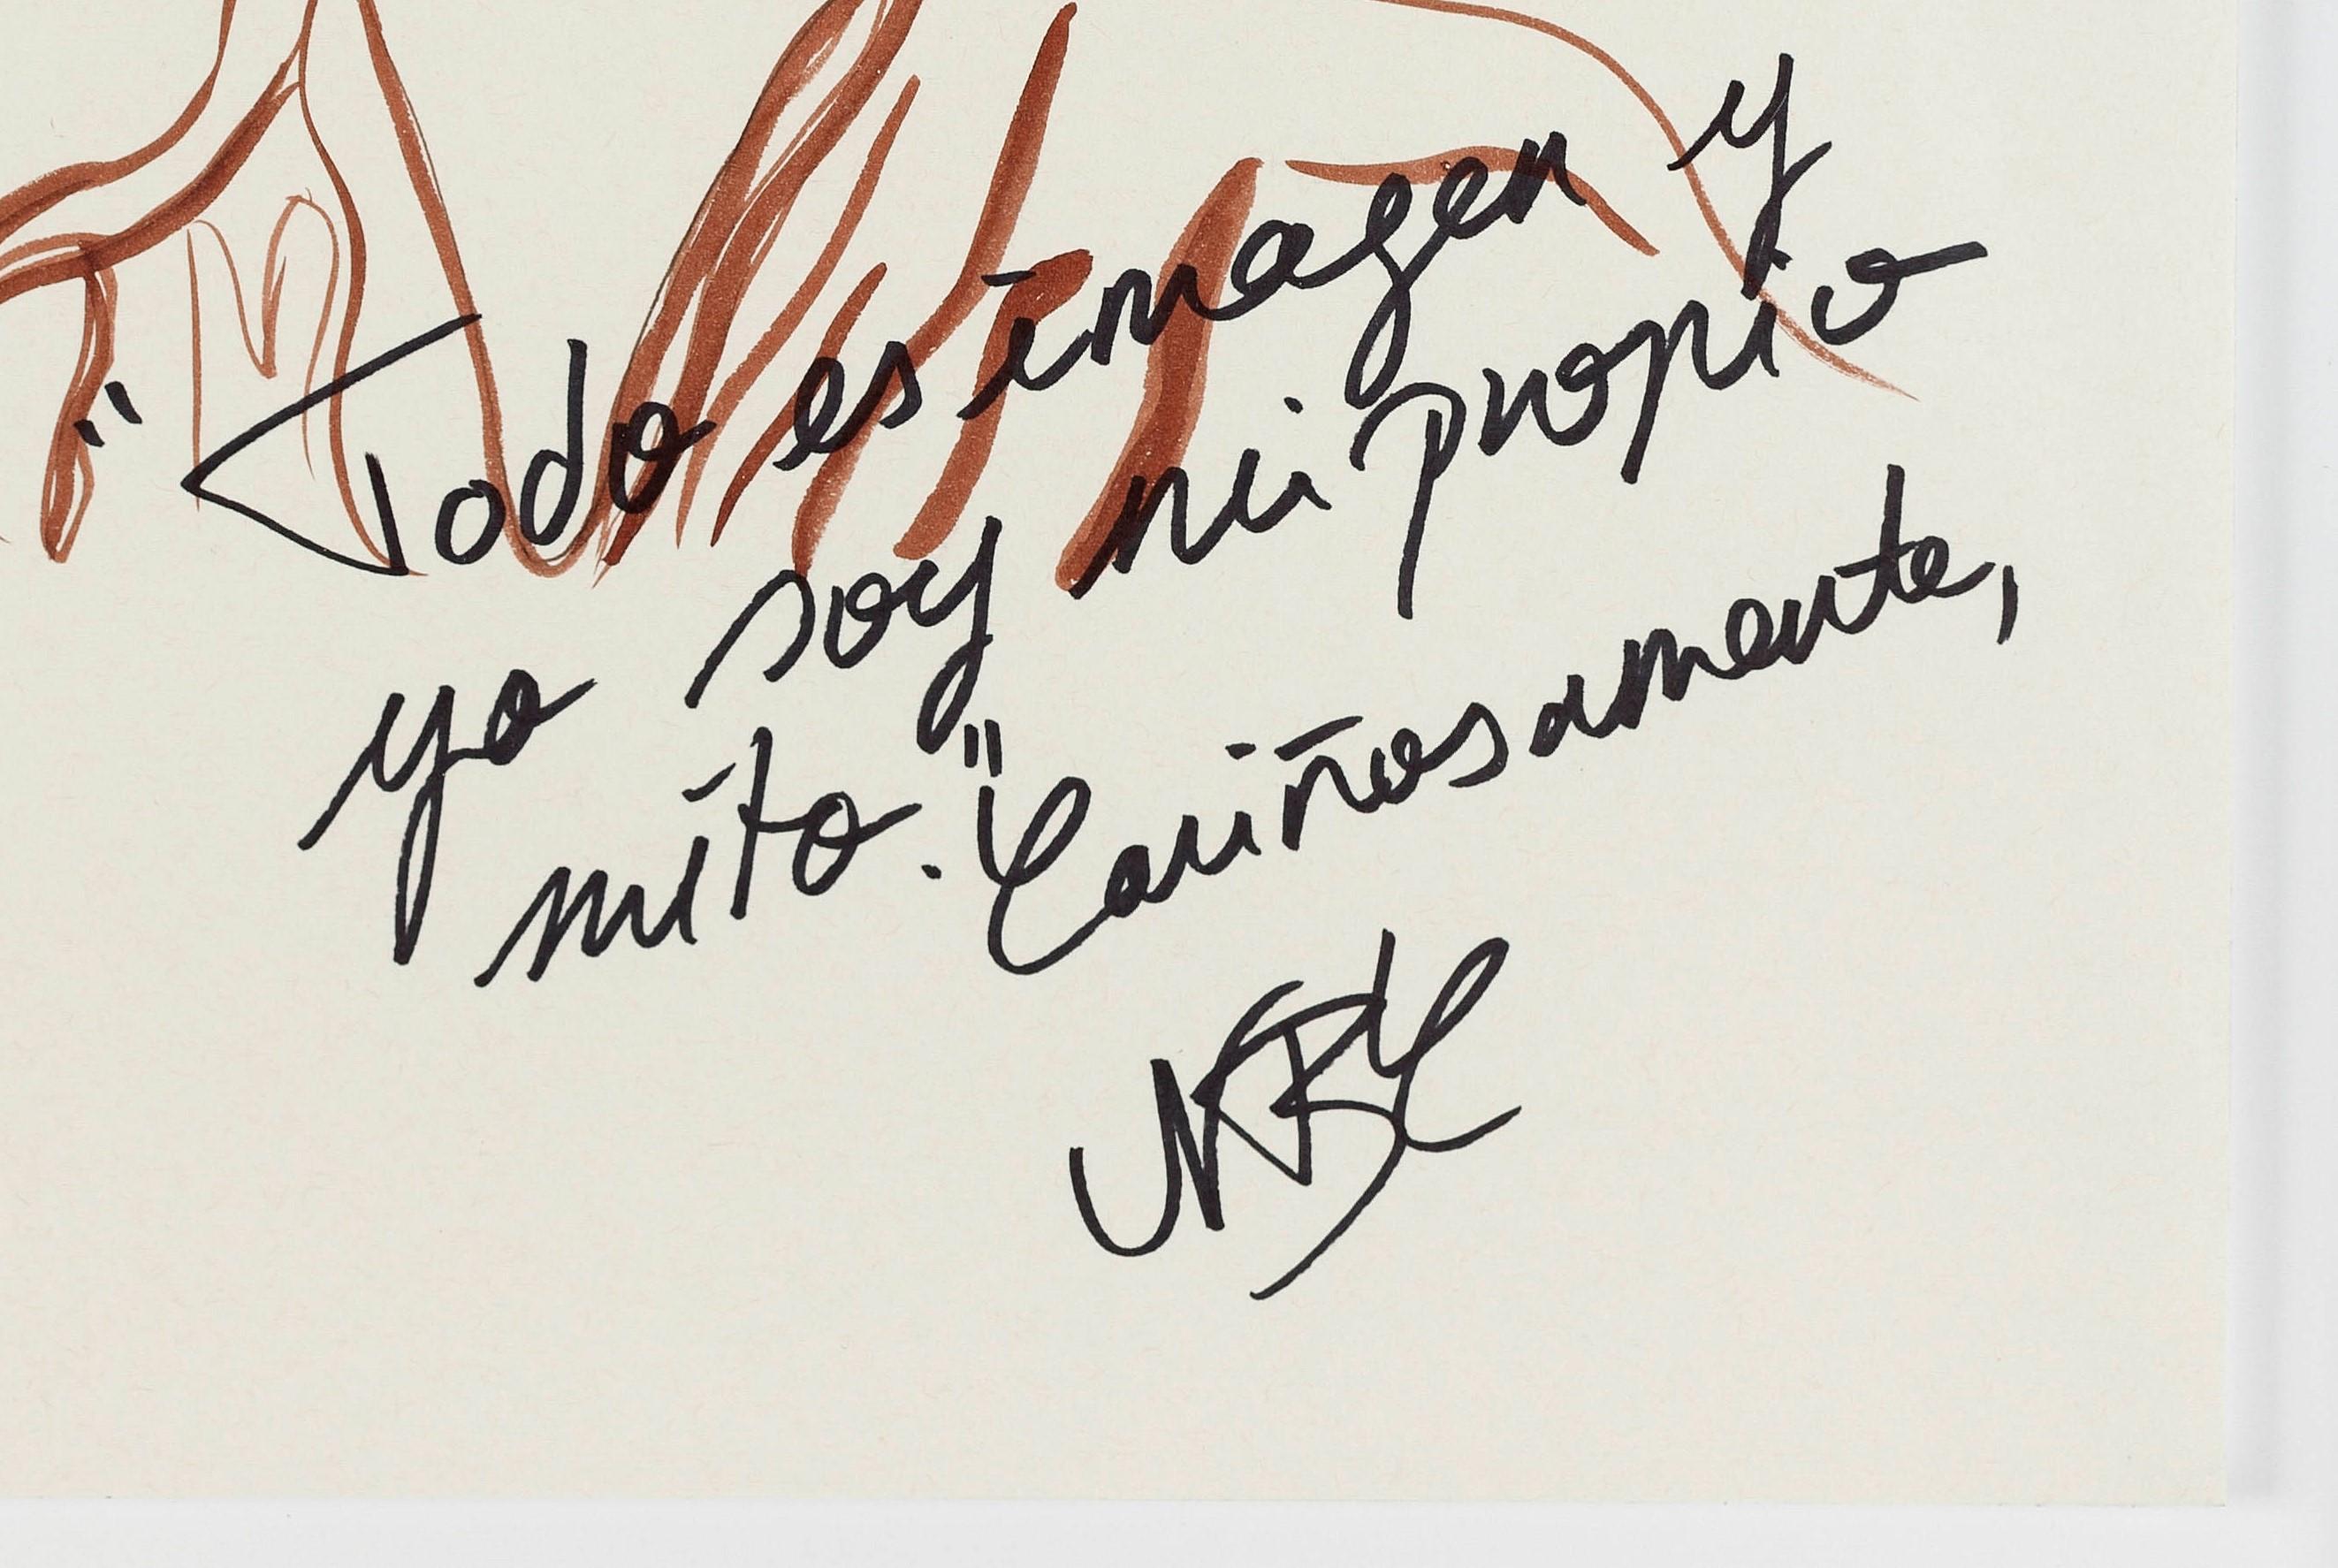 Pola Negri II.  Zeichnung aus der Serie The Dis-enchanted. (Beige), Figurative Art, von Paloma Castello